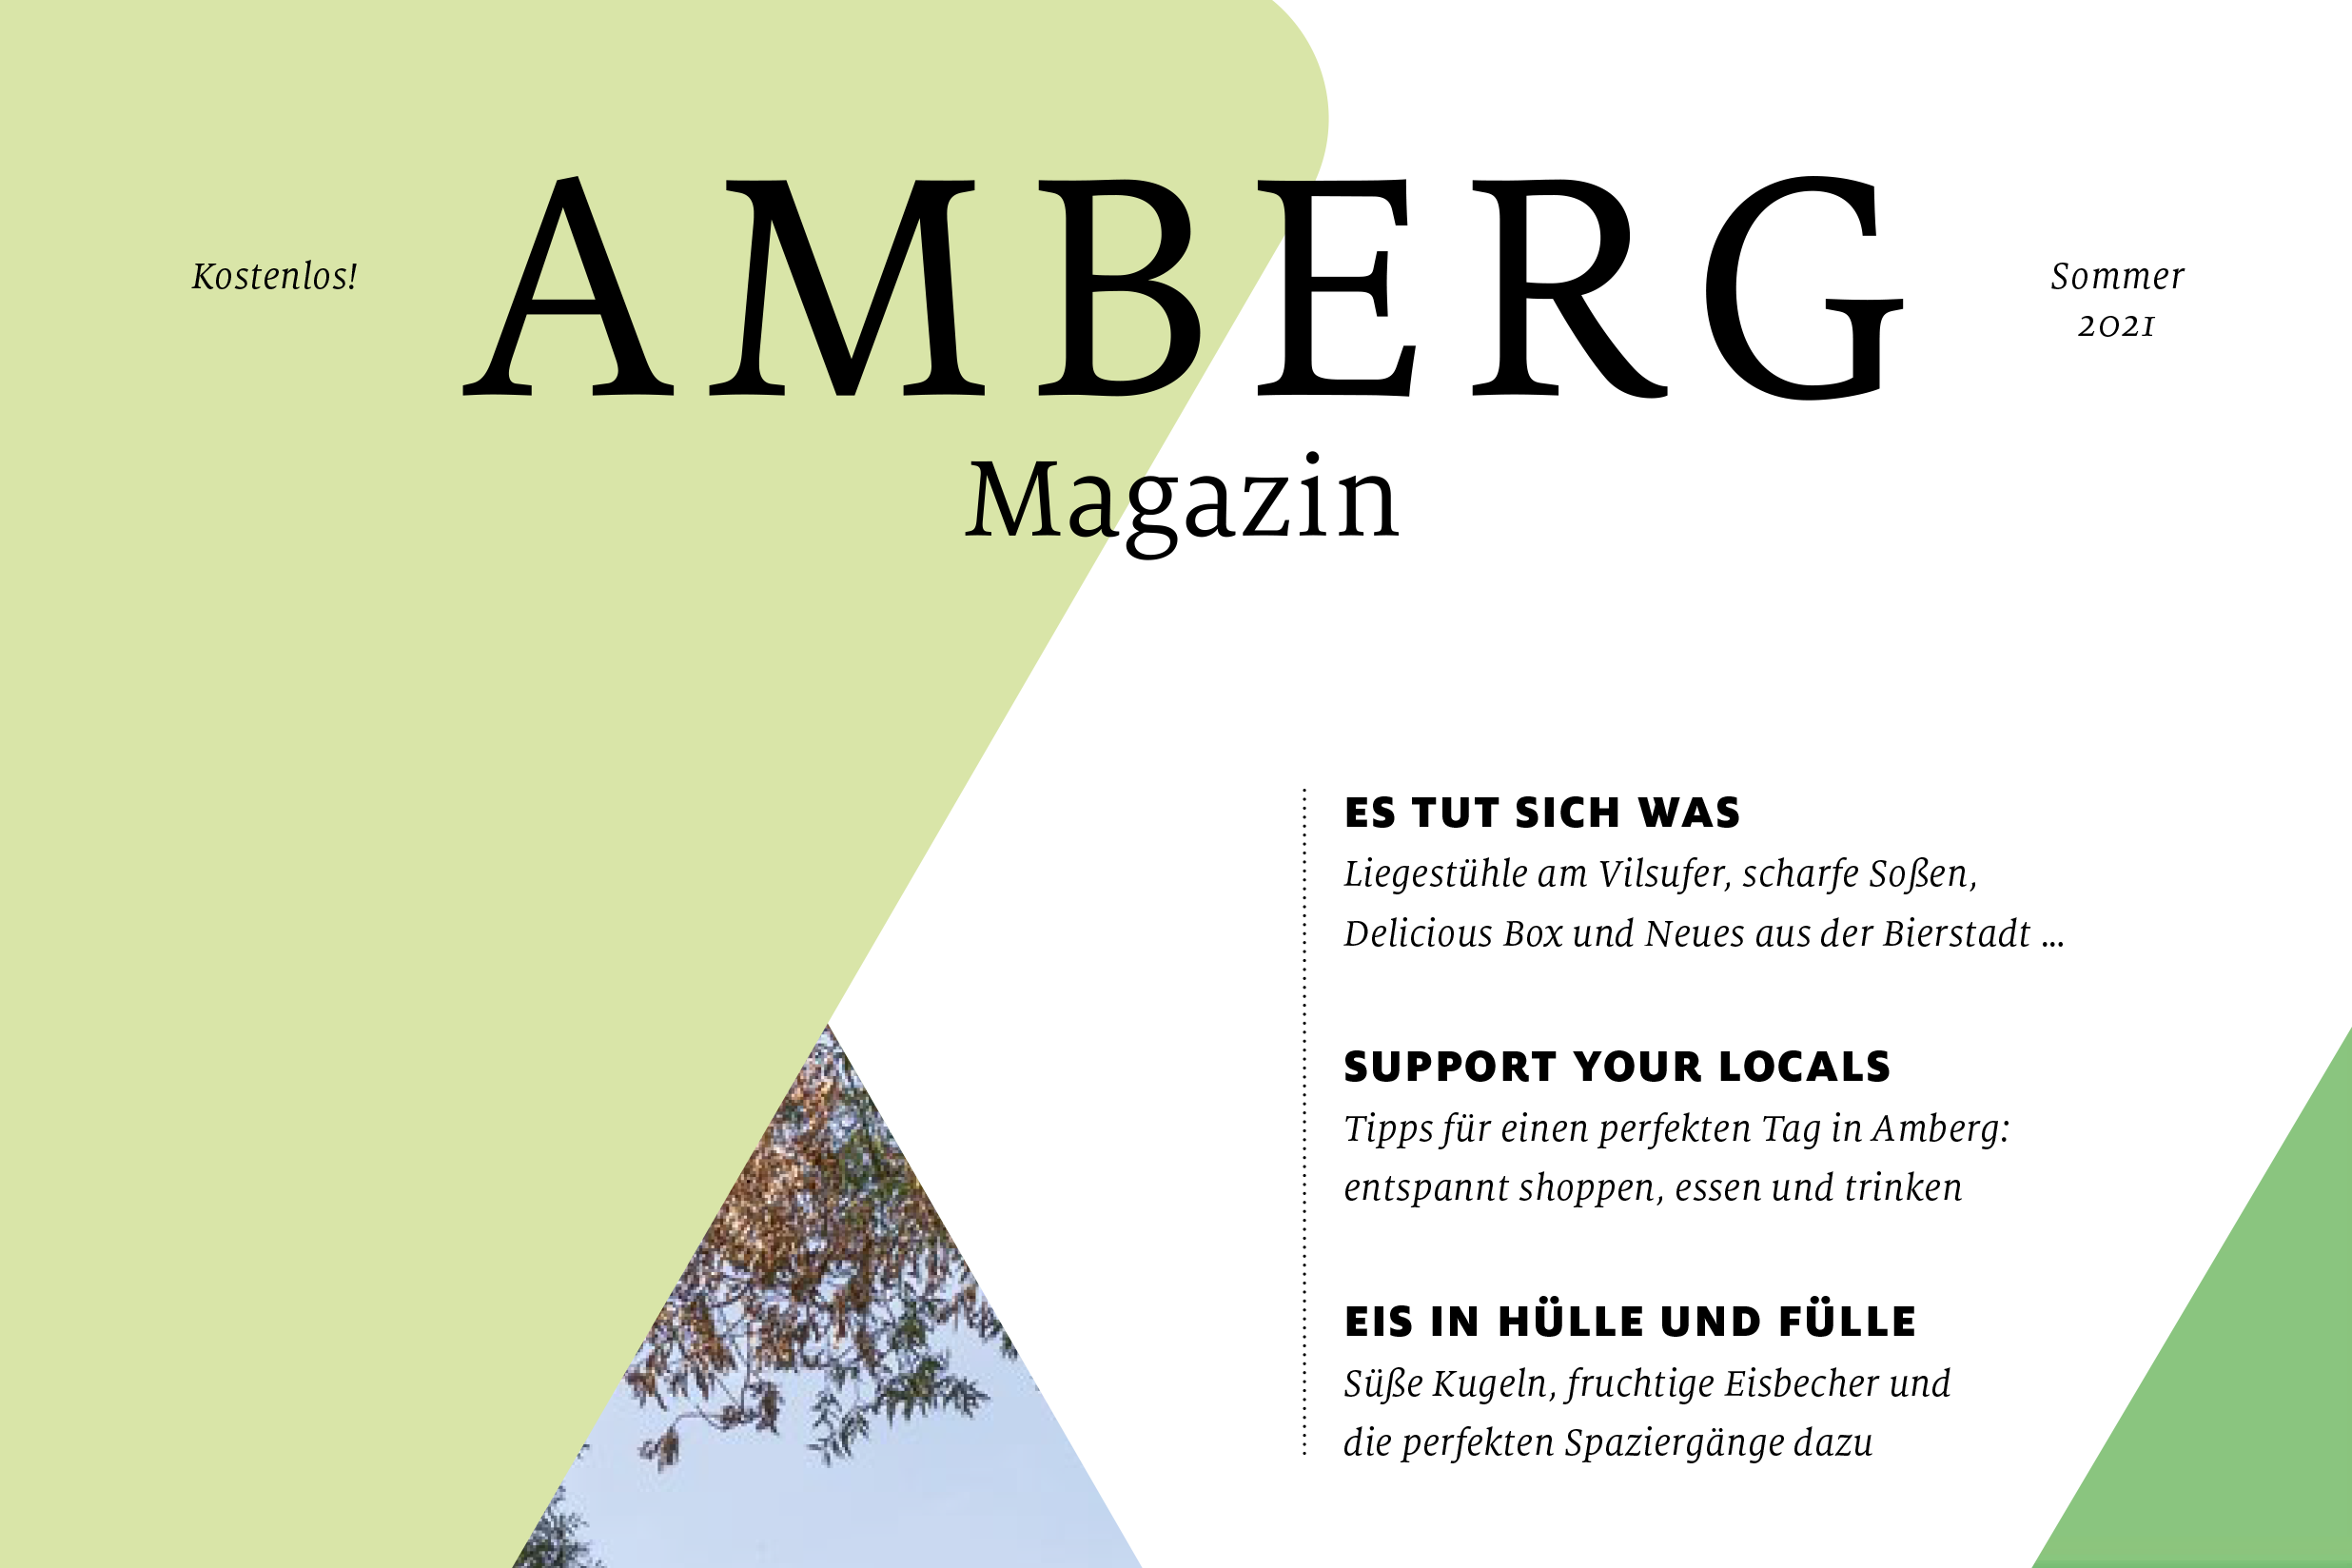 Das neue Amberg Magazin ist da!